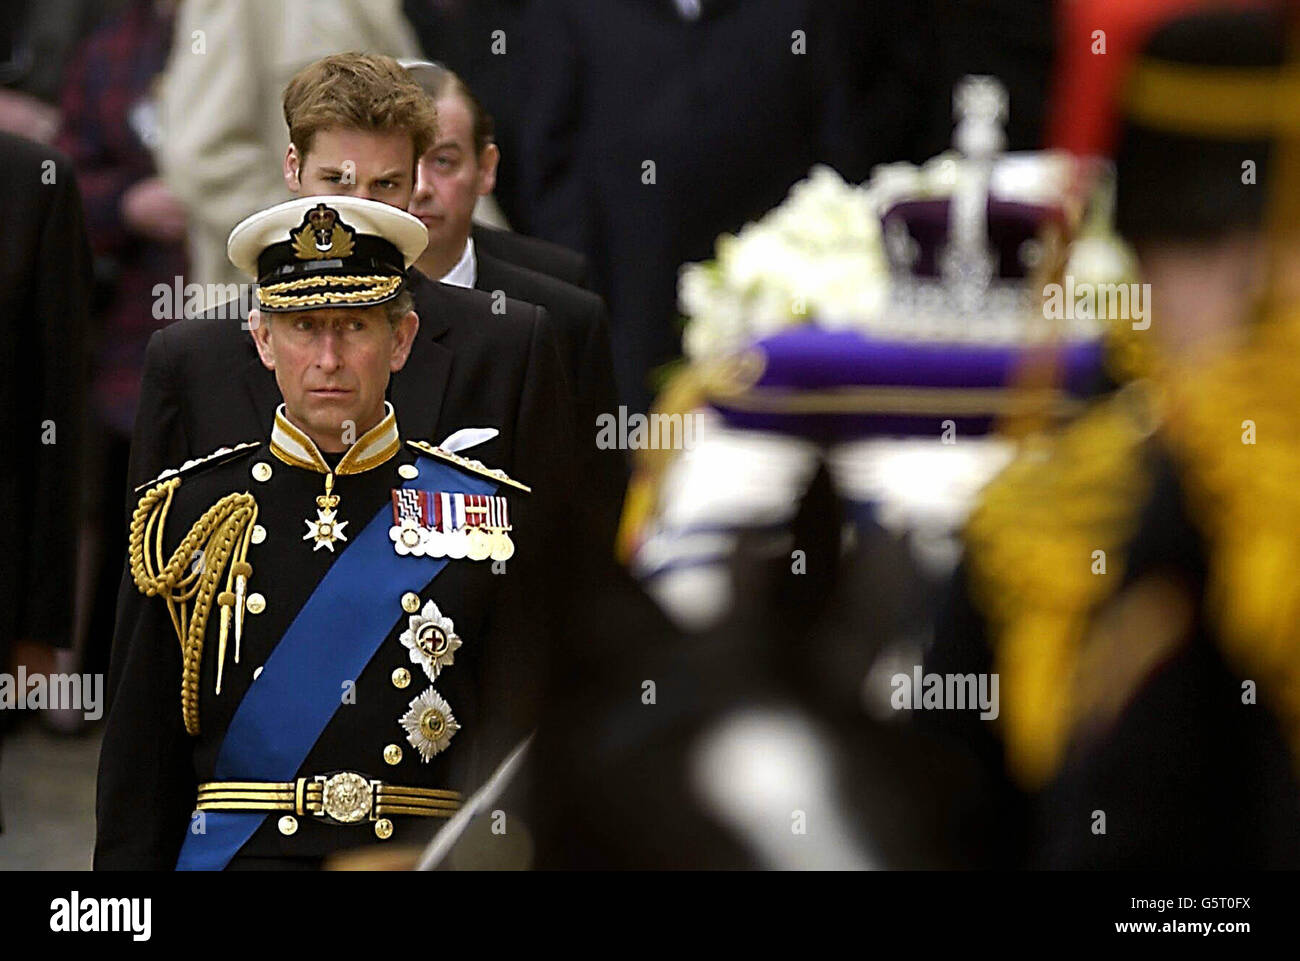 El Príncipe de Gales mira el ataúd de la Reina Madre cuando sale de Westminster Hall en Londres en un carruaje de armas, para la ceremonia funeraria en la Abadía de Westminster. Después del servicio, la Madre Qeen será enterrada en el Castillo de Windsor. Foto de stock